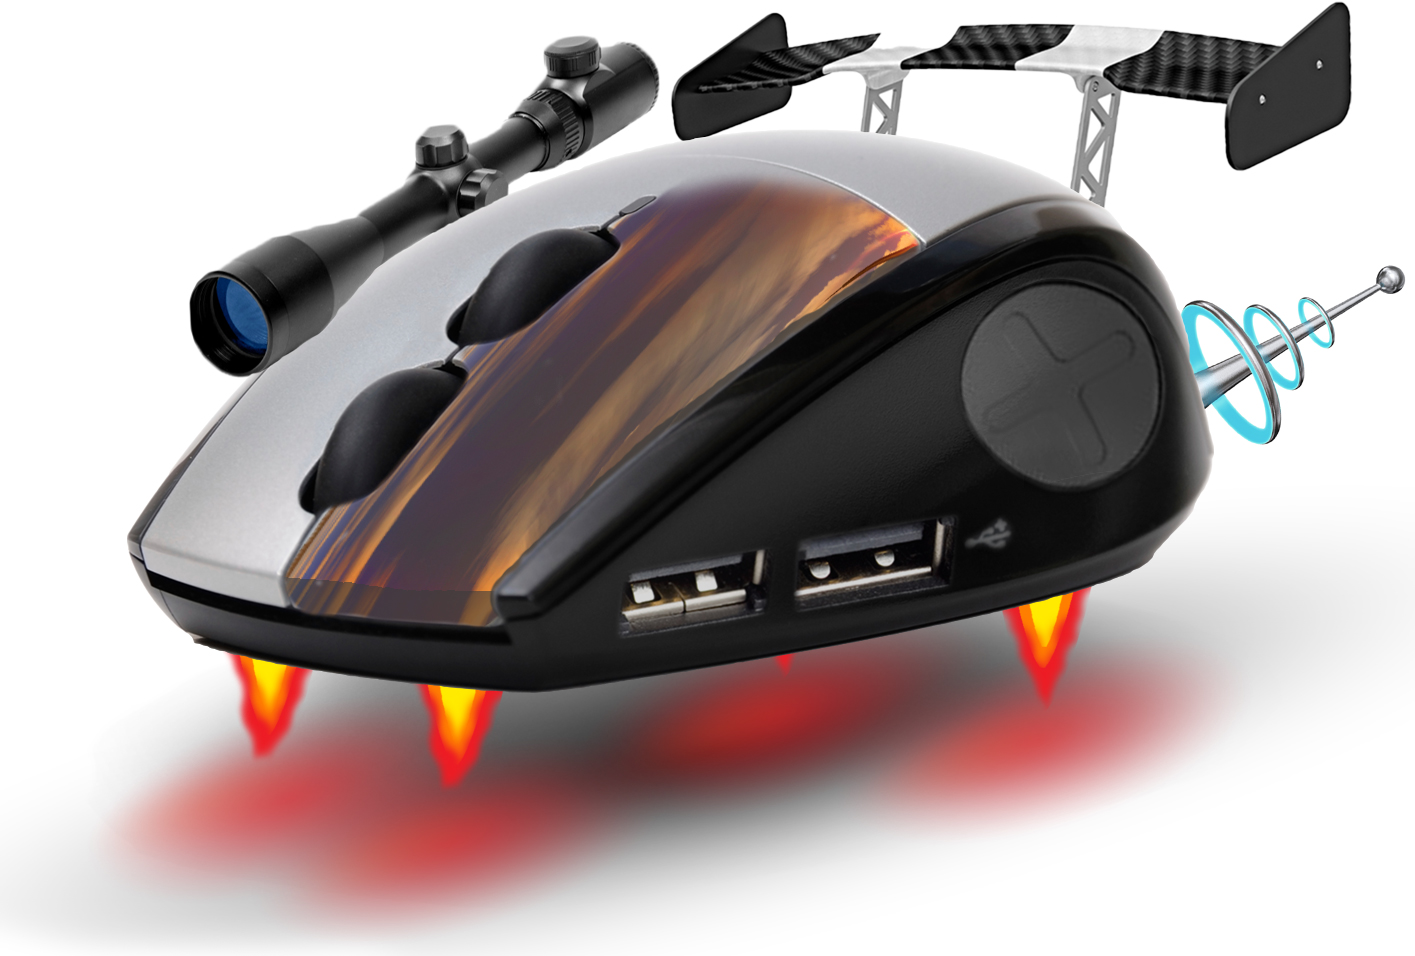 La souris du futur, avec jets, lunette et ports USB